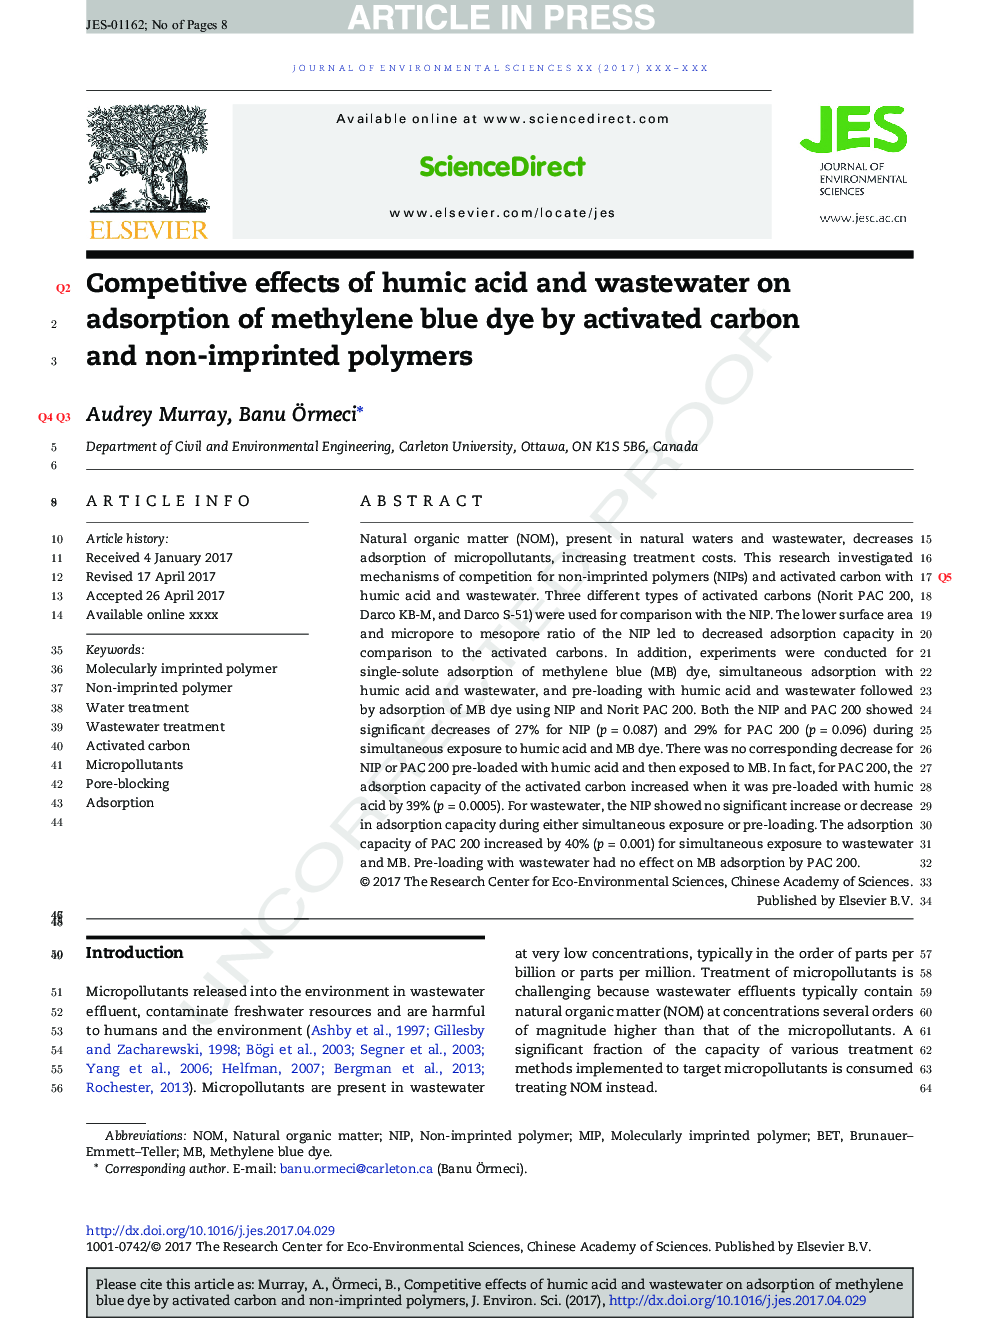 اثرات رقابتی اسید هومیک و فاضلاب بر جذب رنگ متیلن آبی با کربن فعال و پلیمرهای غیر مخرب 